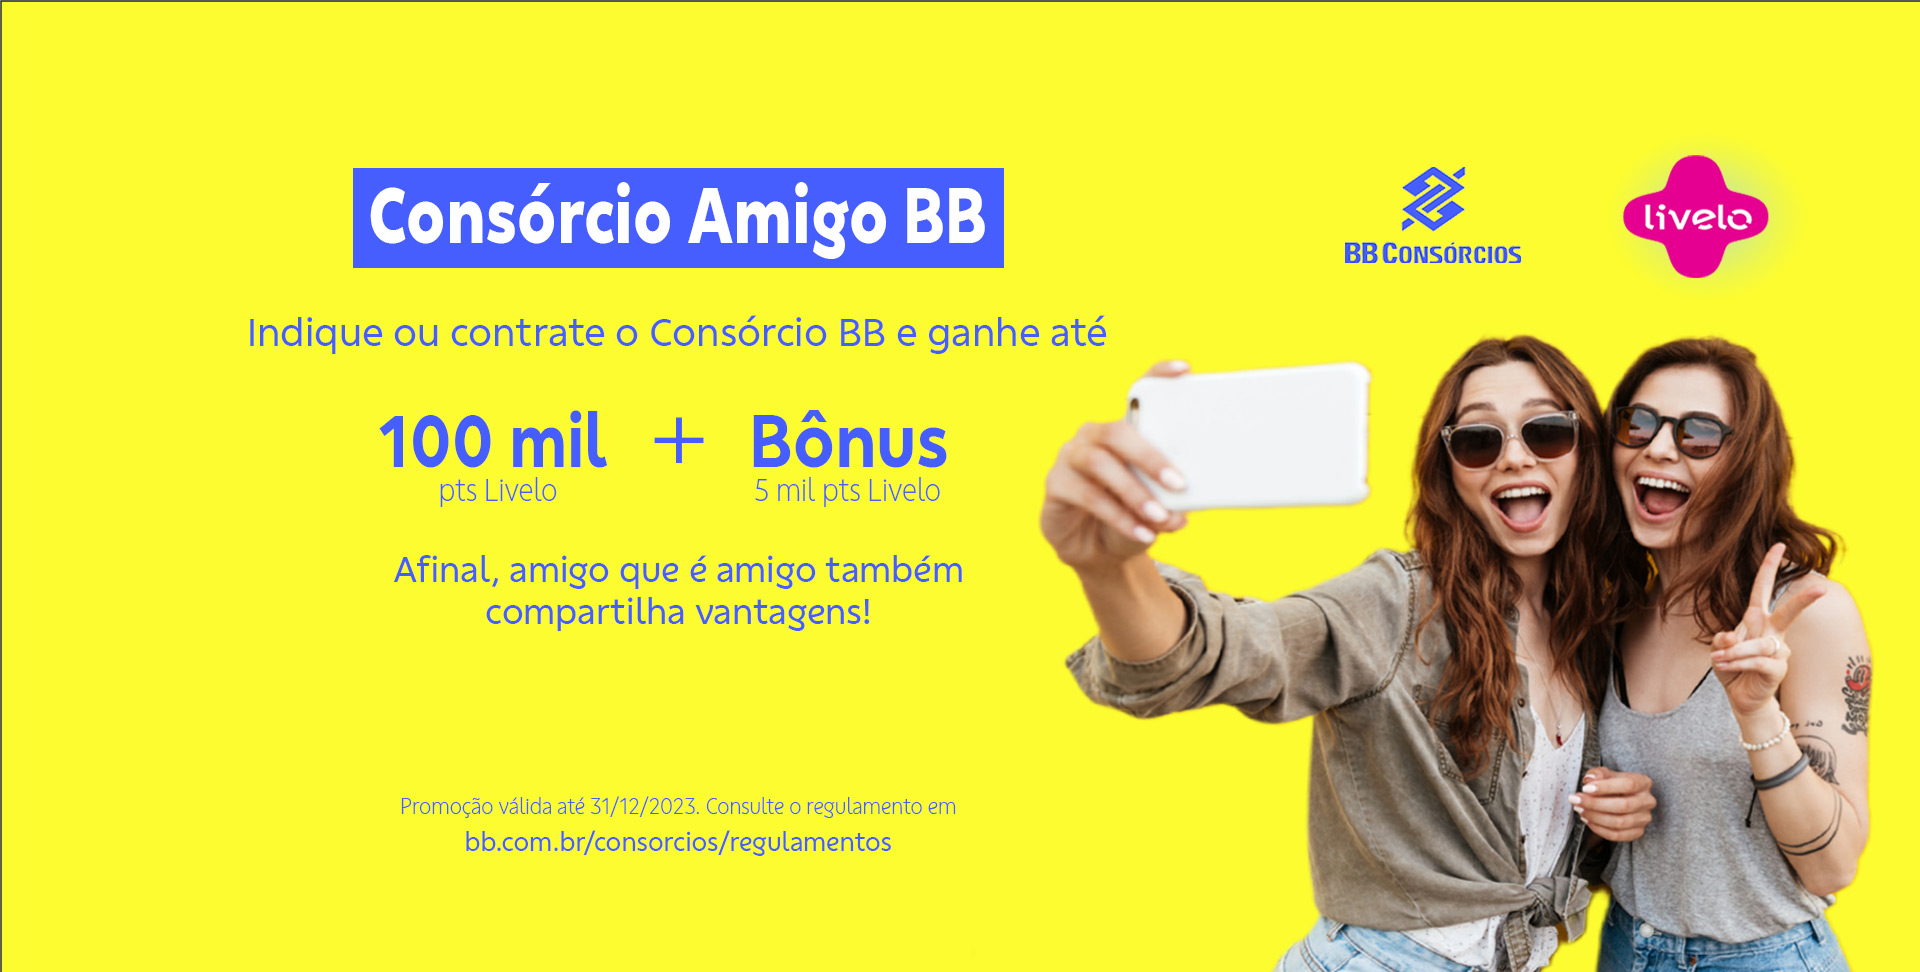 Banco do Brasil abre as inscrições para o Stream Battle BB - Lance!